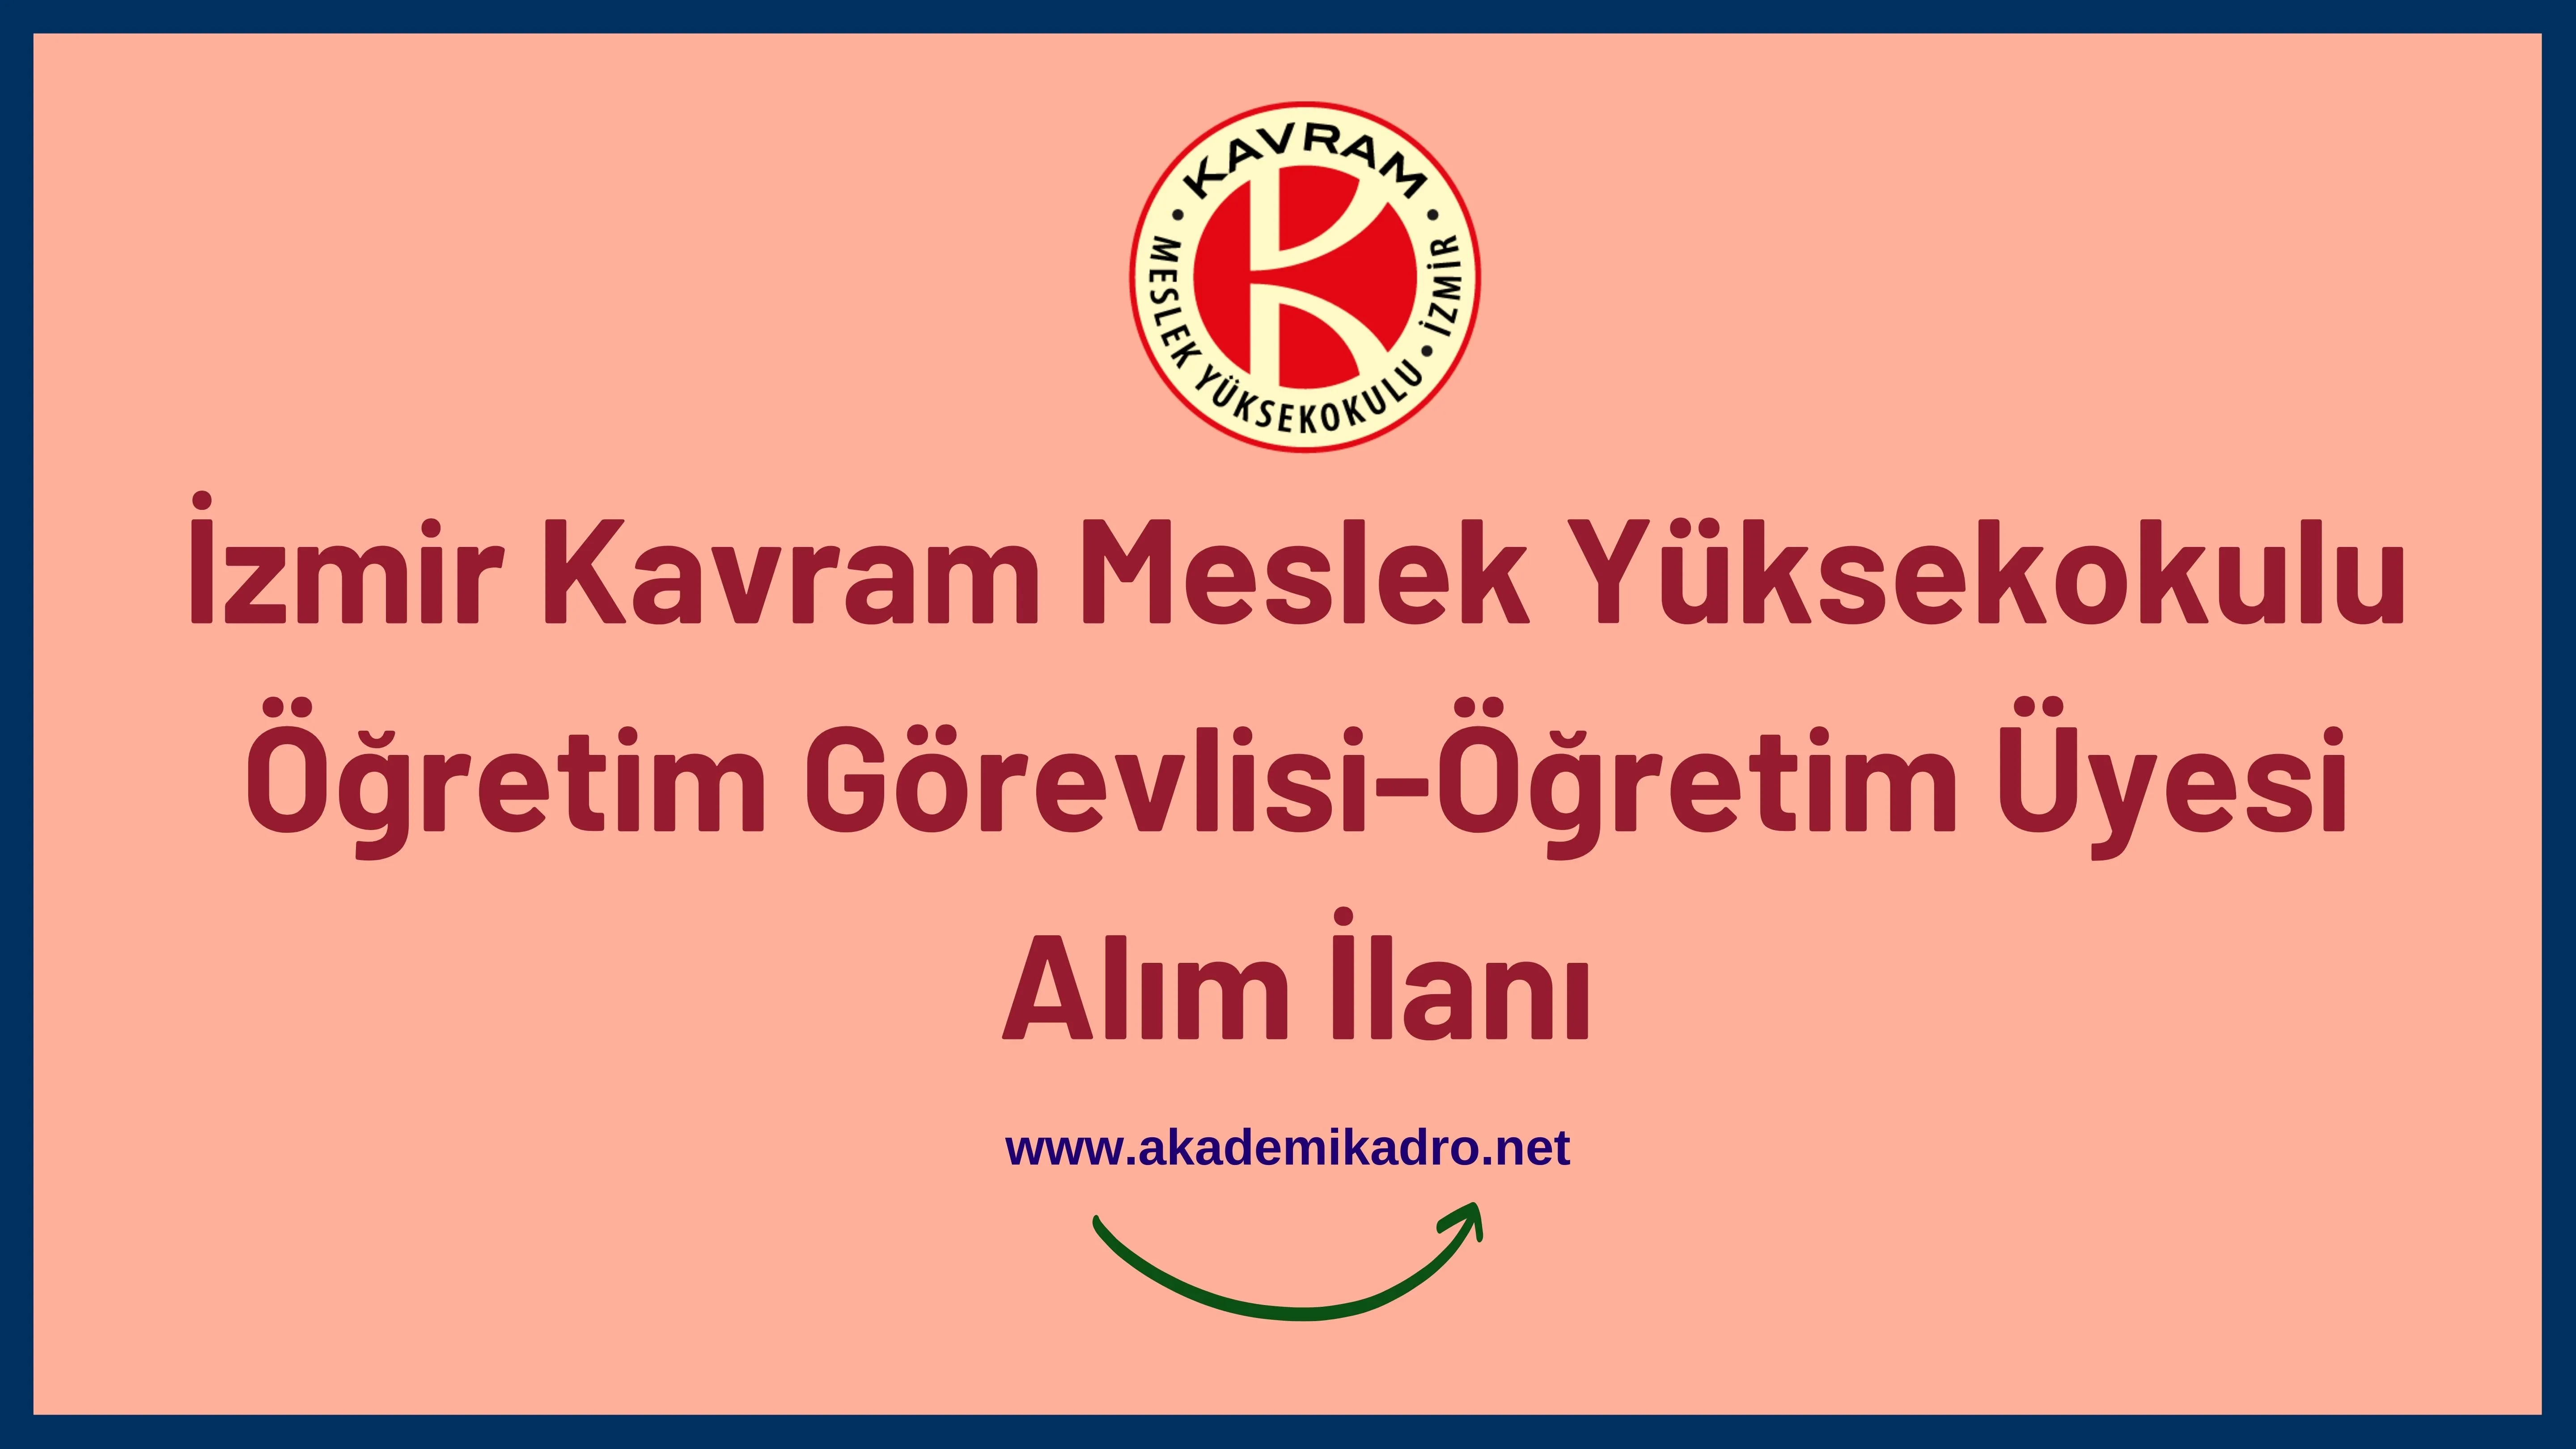 İzmir Kavram Meslek Yüksekokulu 3 Öğretim görevlisi ve 2 Öğretim üyesi alacak. 